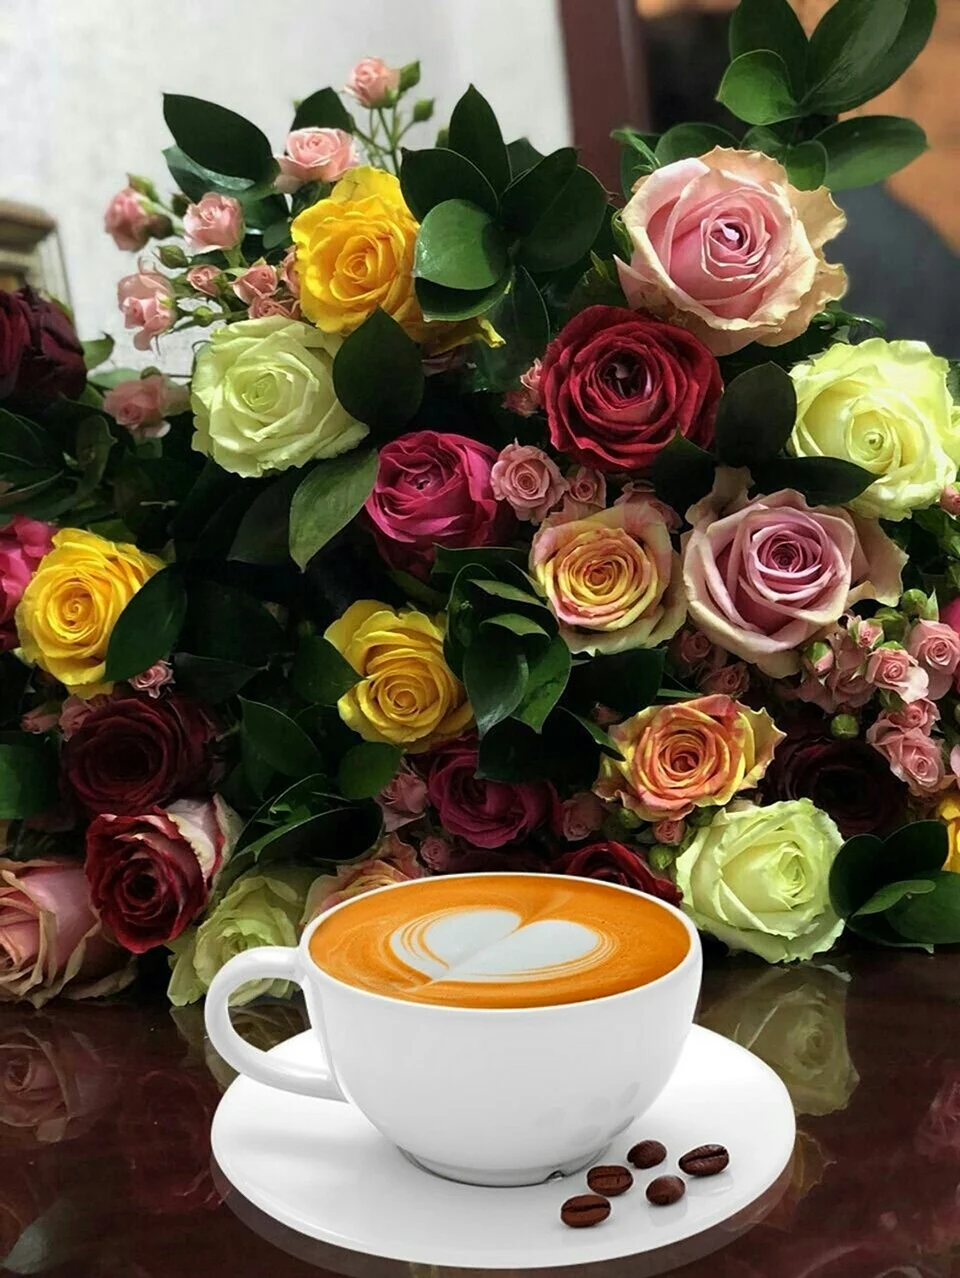 Кофе и цветы. Открытка с добрым утром